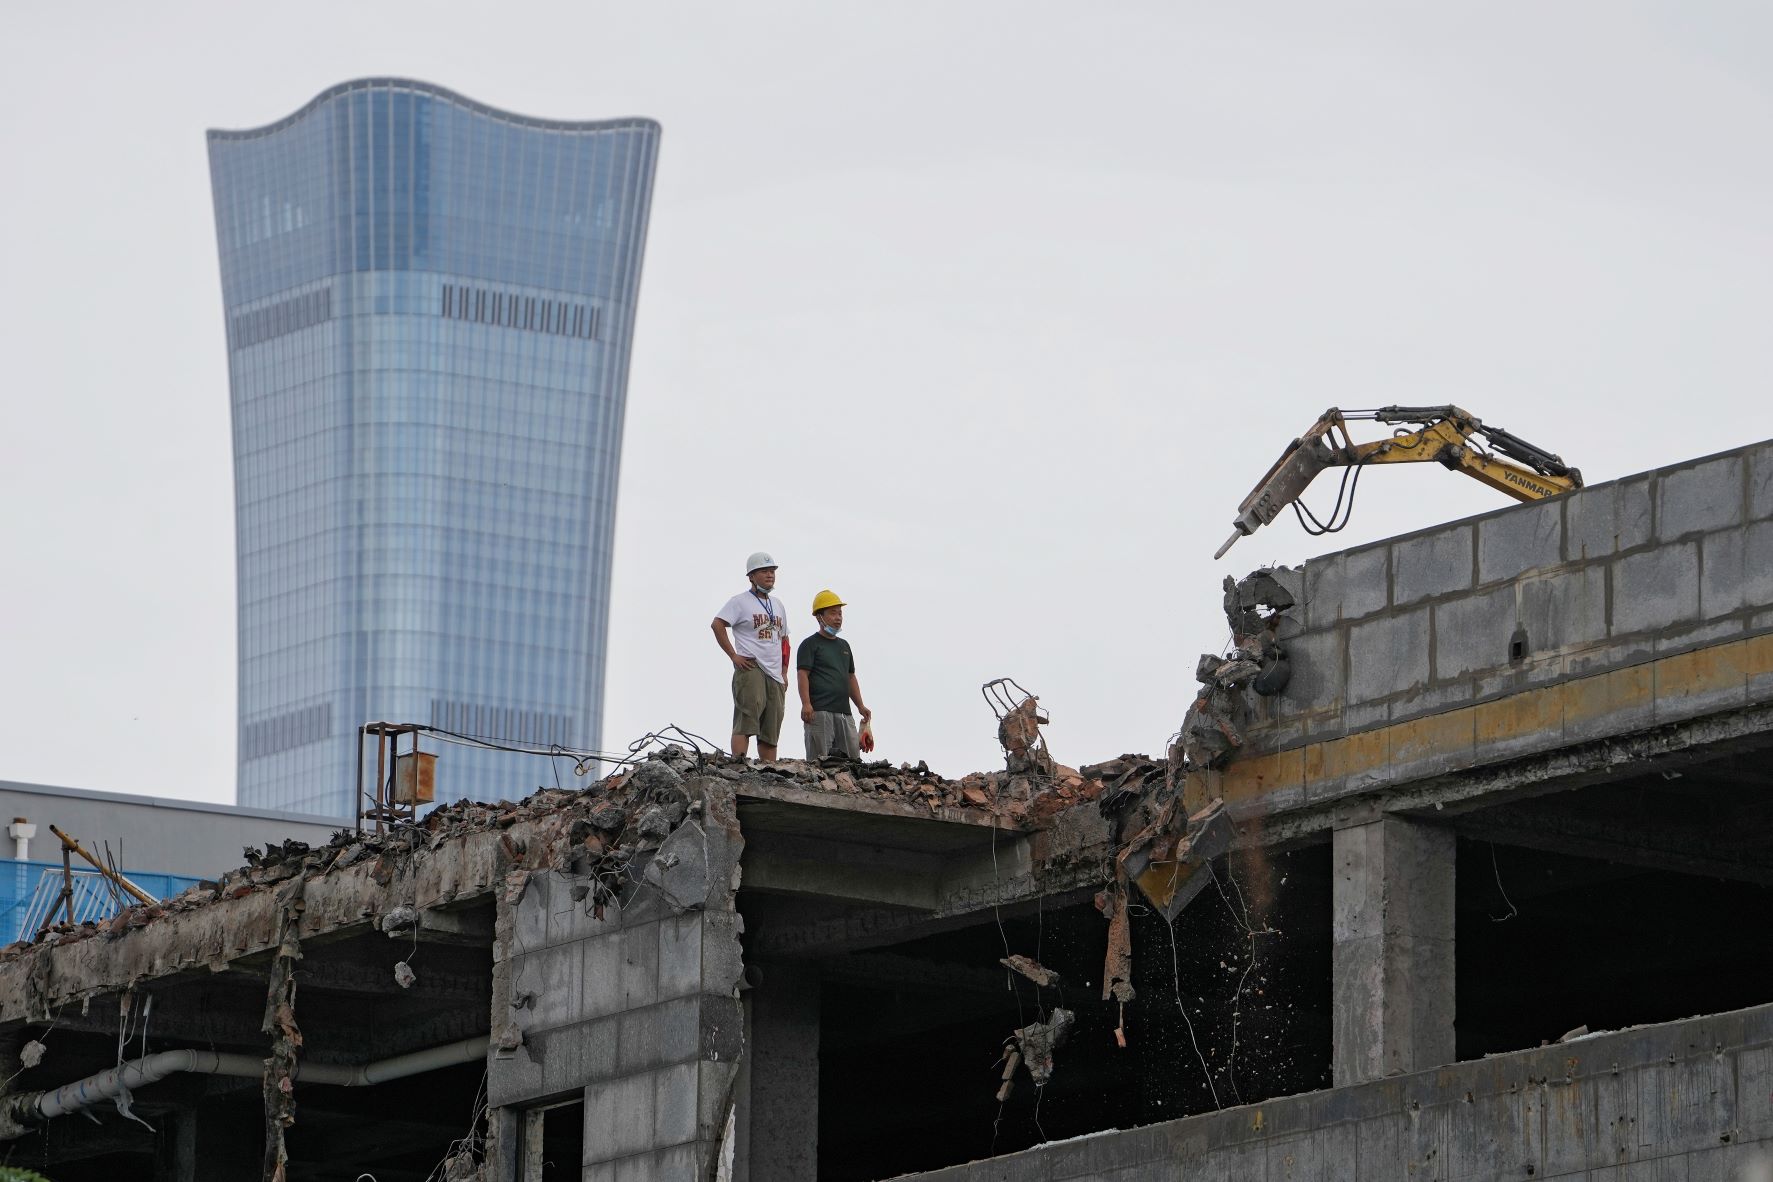 عمال بناء يراقبون حفارة تهدم مبنى وبدت خلفهم ناطحة السحاب شاينا زون تاور التي تعتبر الأطول في الصين بتاريخ 28 يوليو 2022 